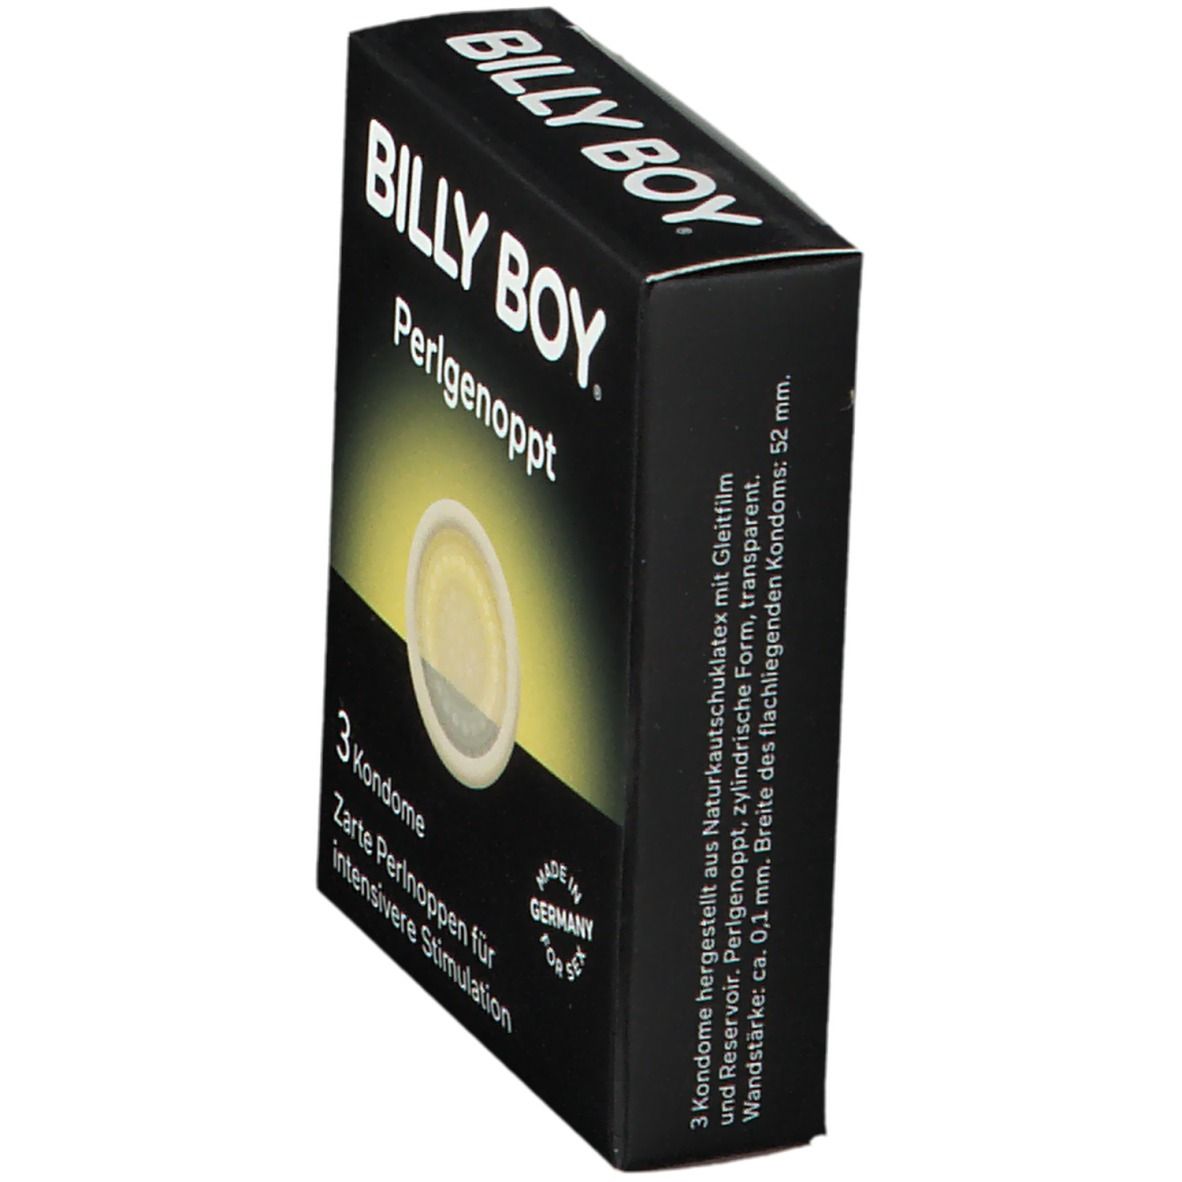 BILLY BOY Kondome Perlgenoppt